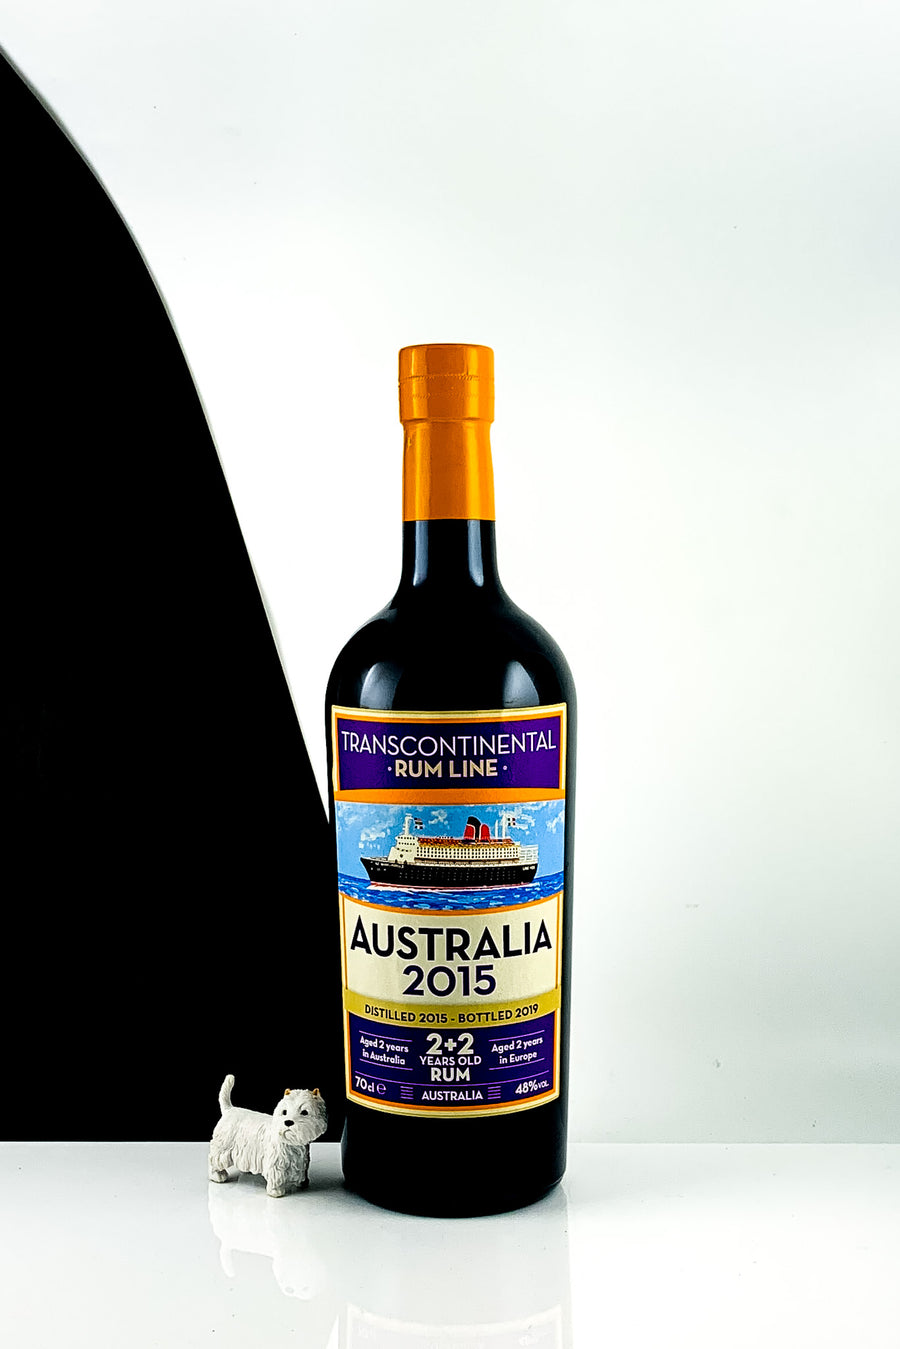 Transcontinental Rum Line Australia 2015